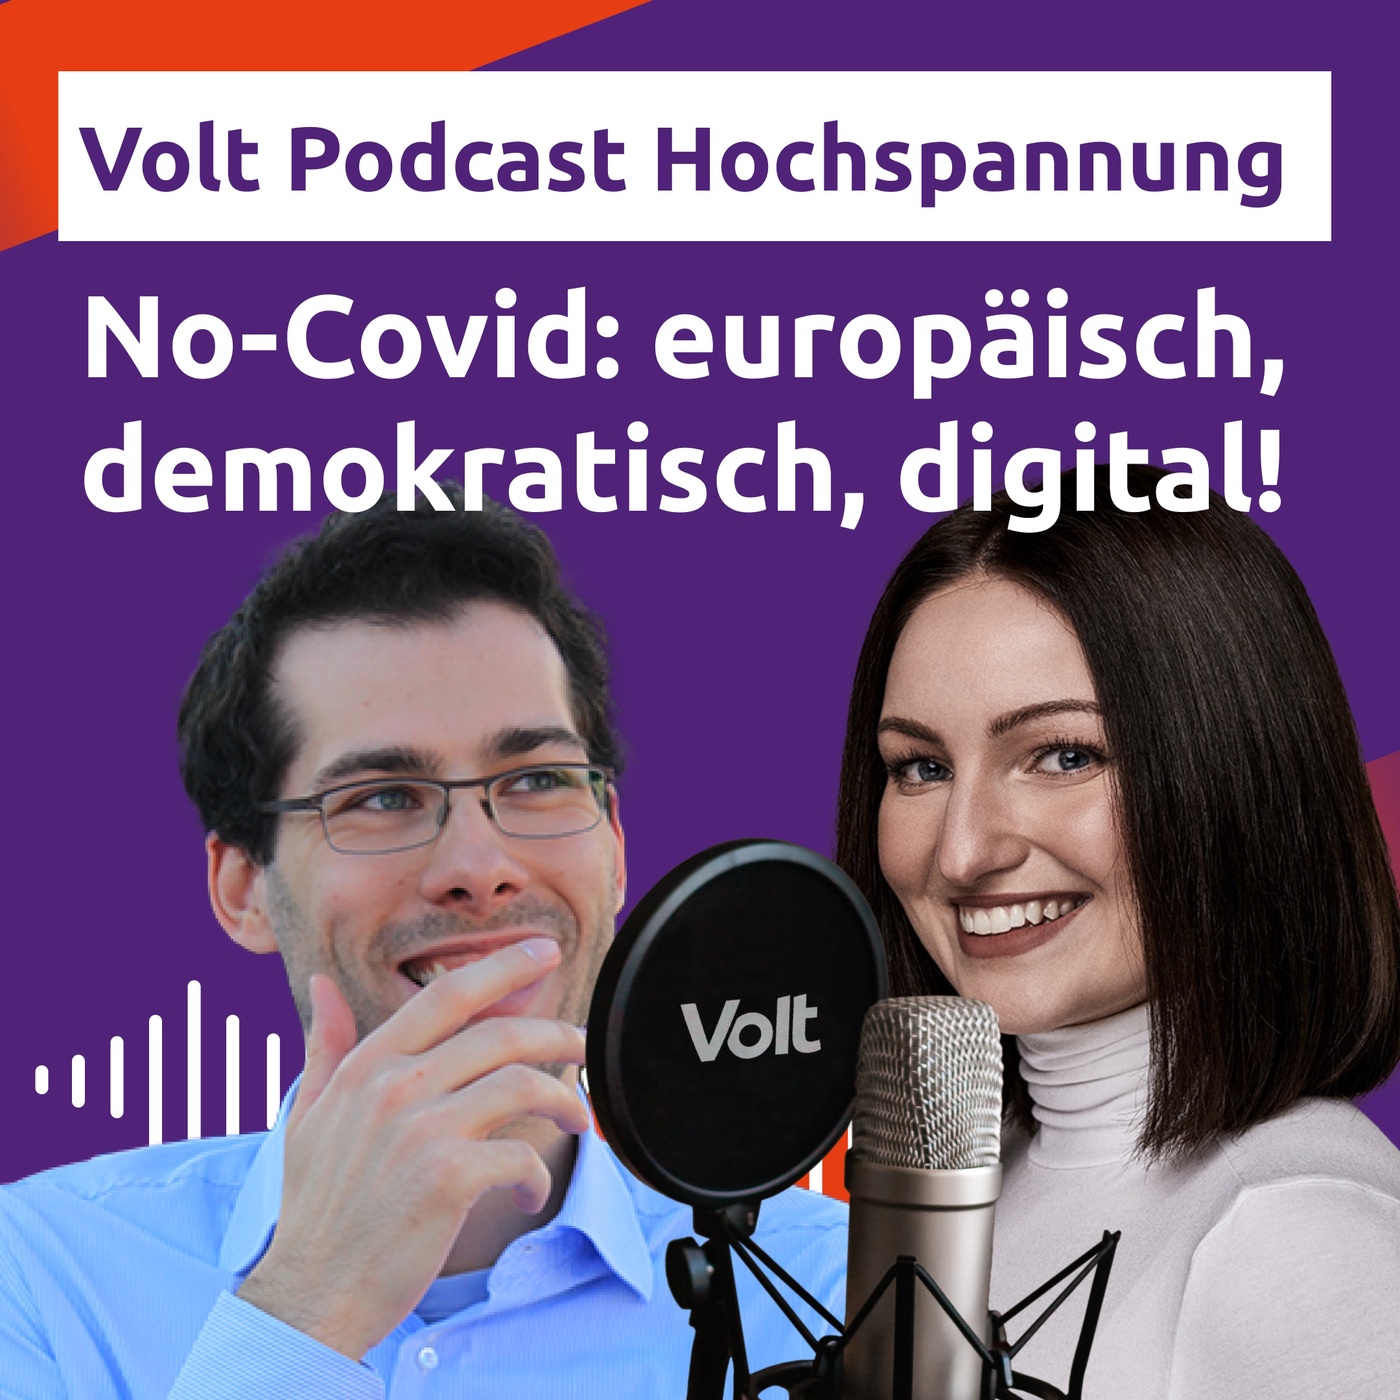 No-Covid: europäisch, demokratisch, digital! - Blutspenden für #500mlEuropa - Hochspannung Podcast